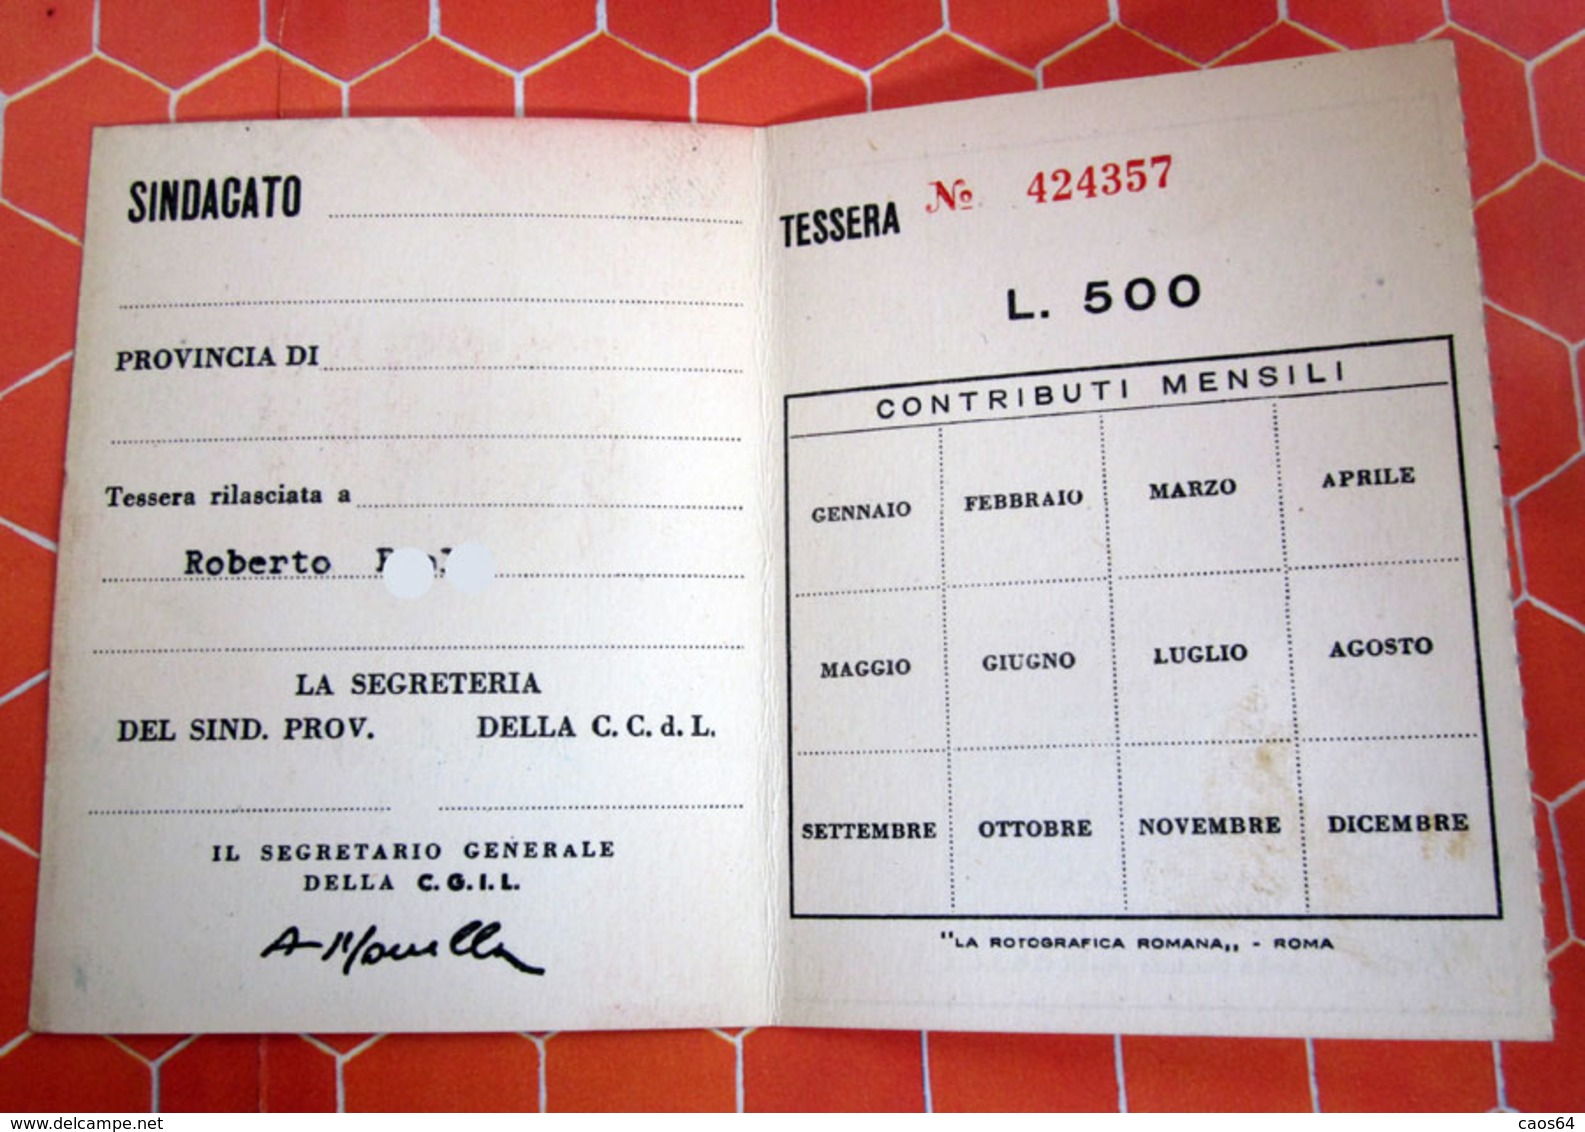 TESSERA CGIL 1965 TORINO - Cartes De Membre